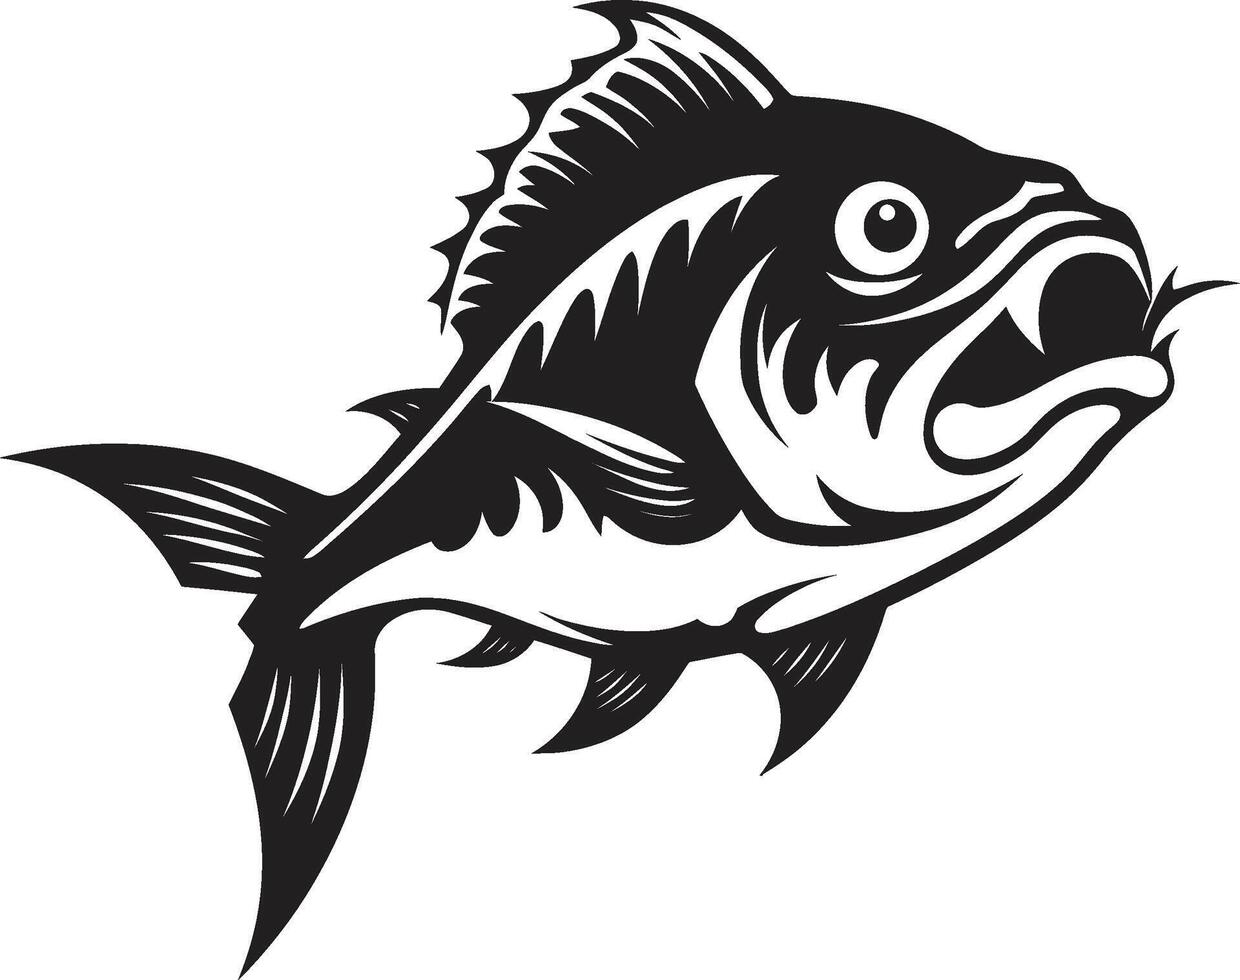 feroz barbatanas desencadeado intrincado Preto logotipo com moderno piranha noir piranha assalto lustroso silhueta para uma negrito branding vetor